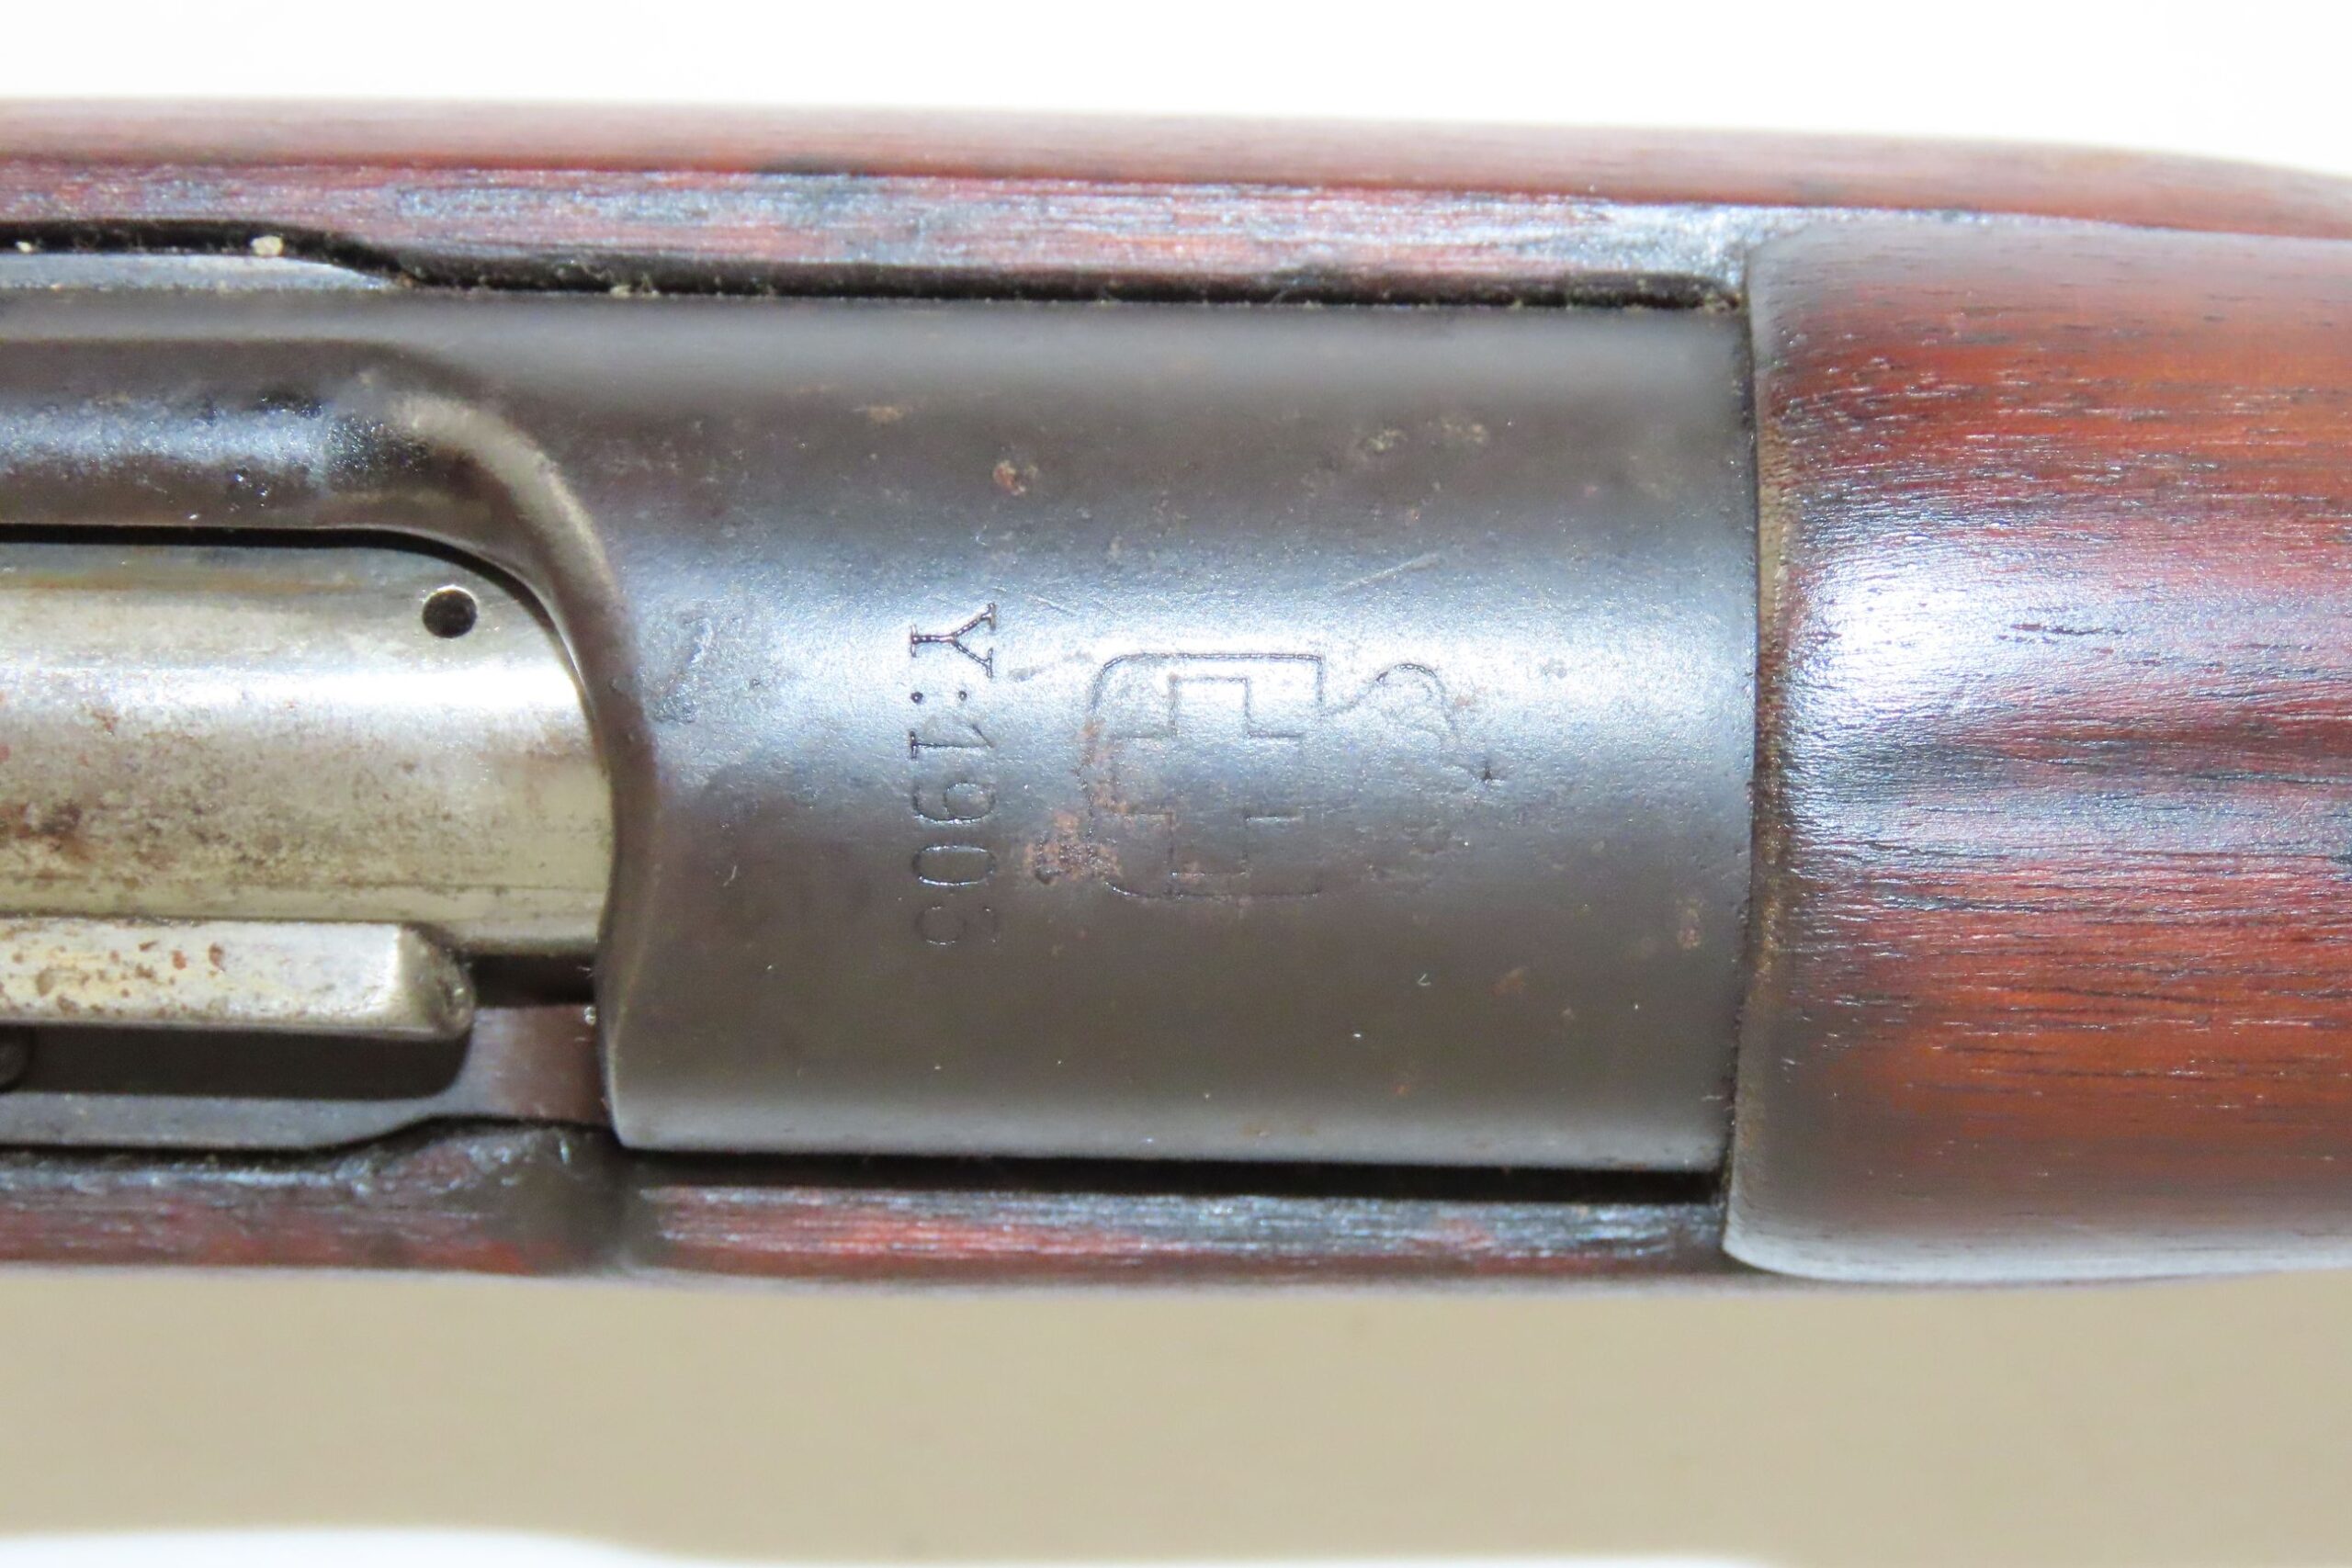 Greek Contract Steyr Mannlicher Schoenauer Model 1903 Rifle 3.15.22 C ...